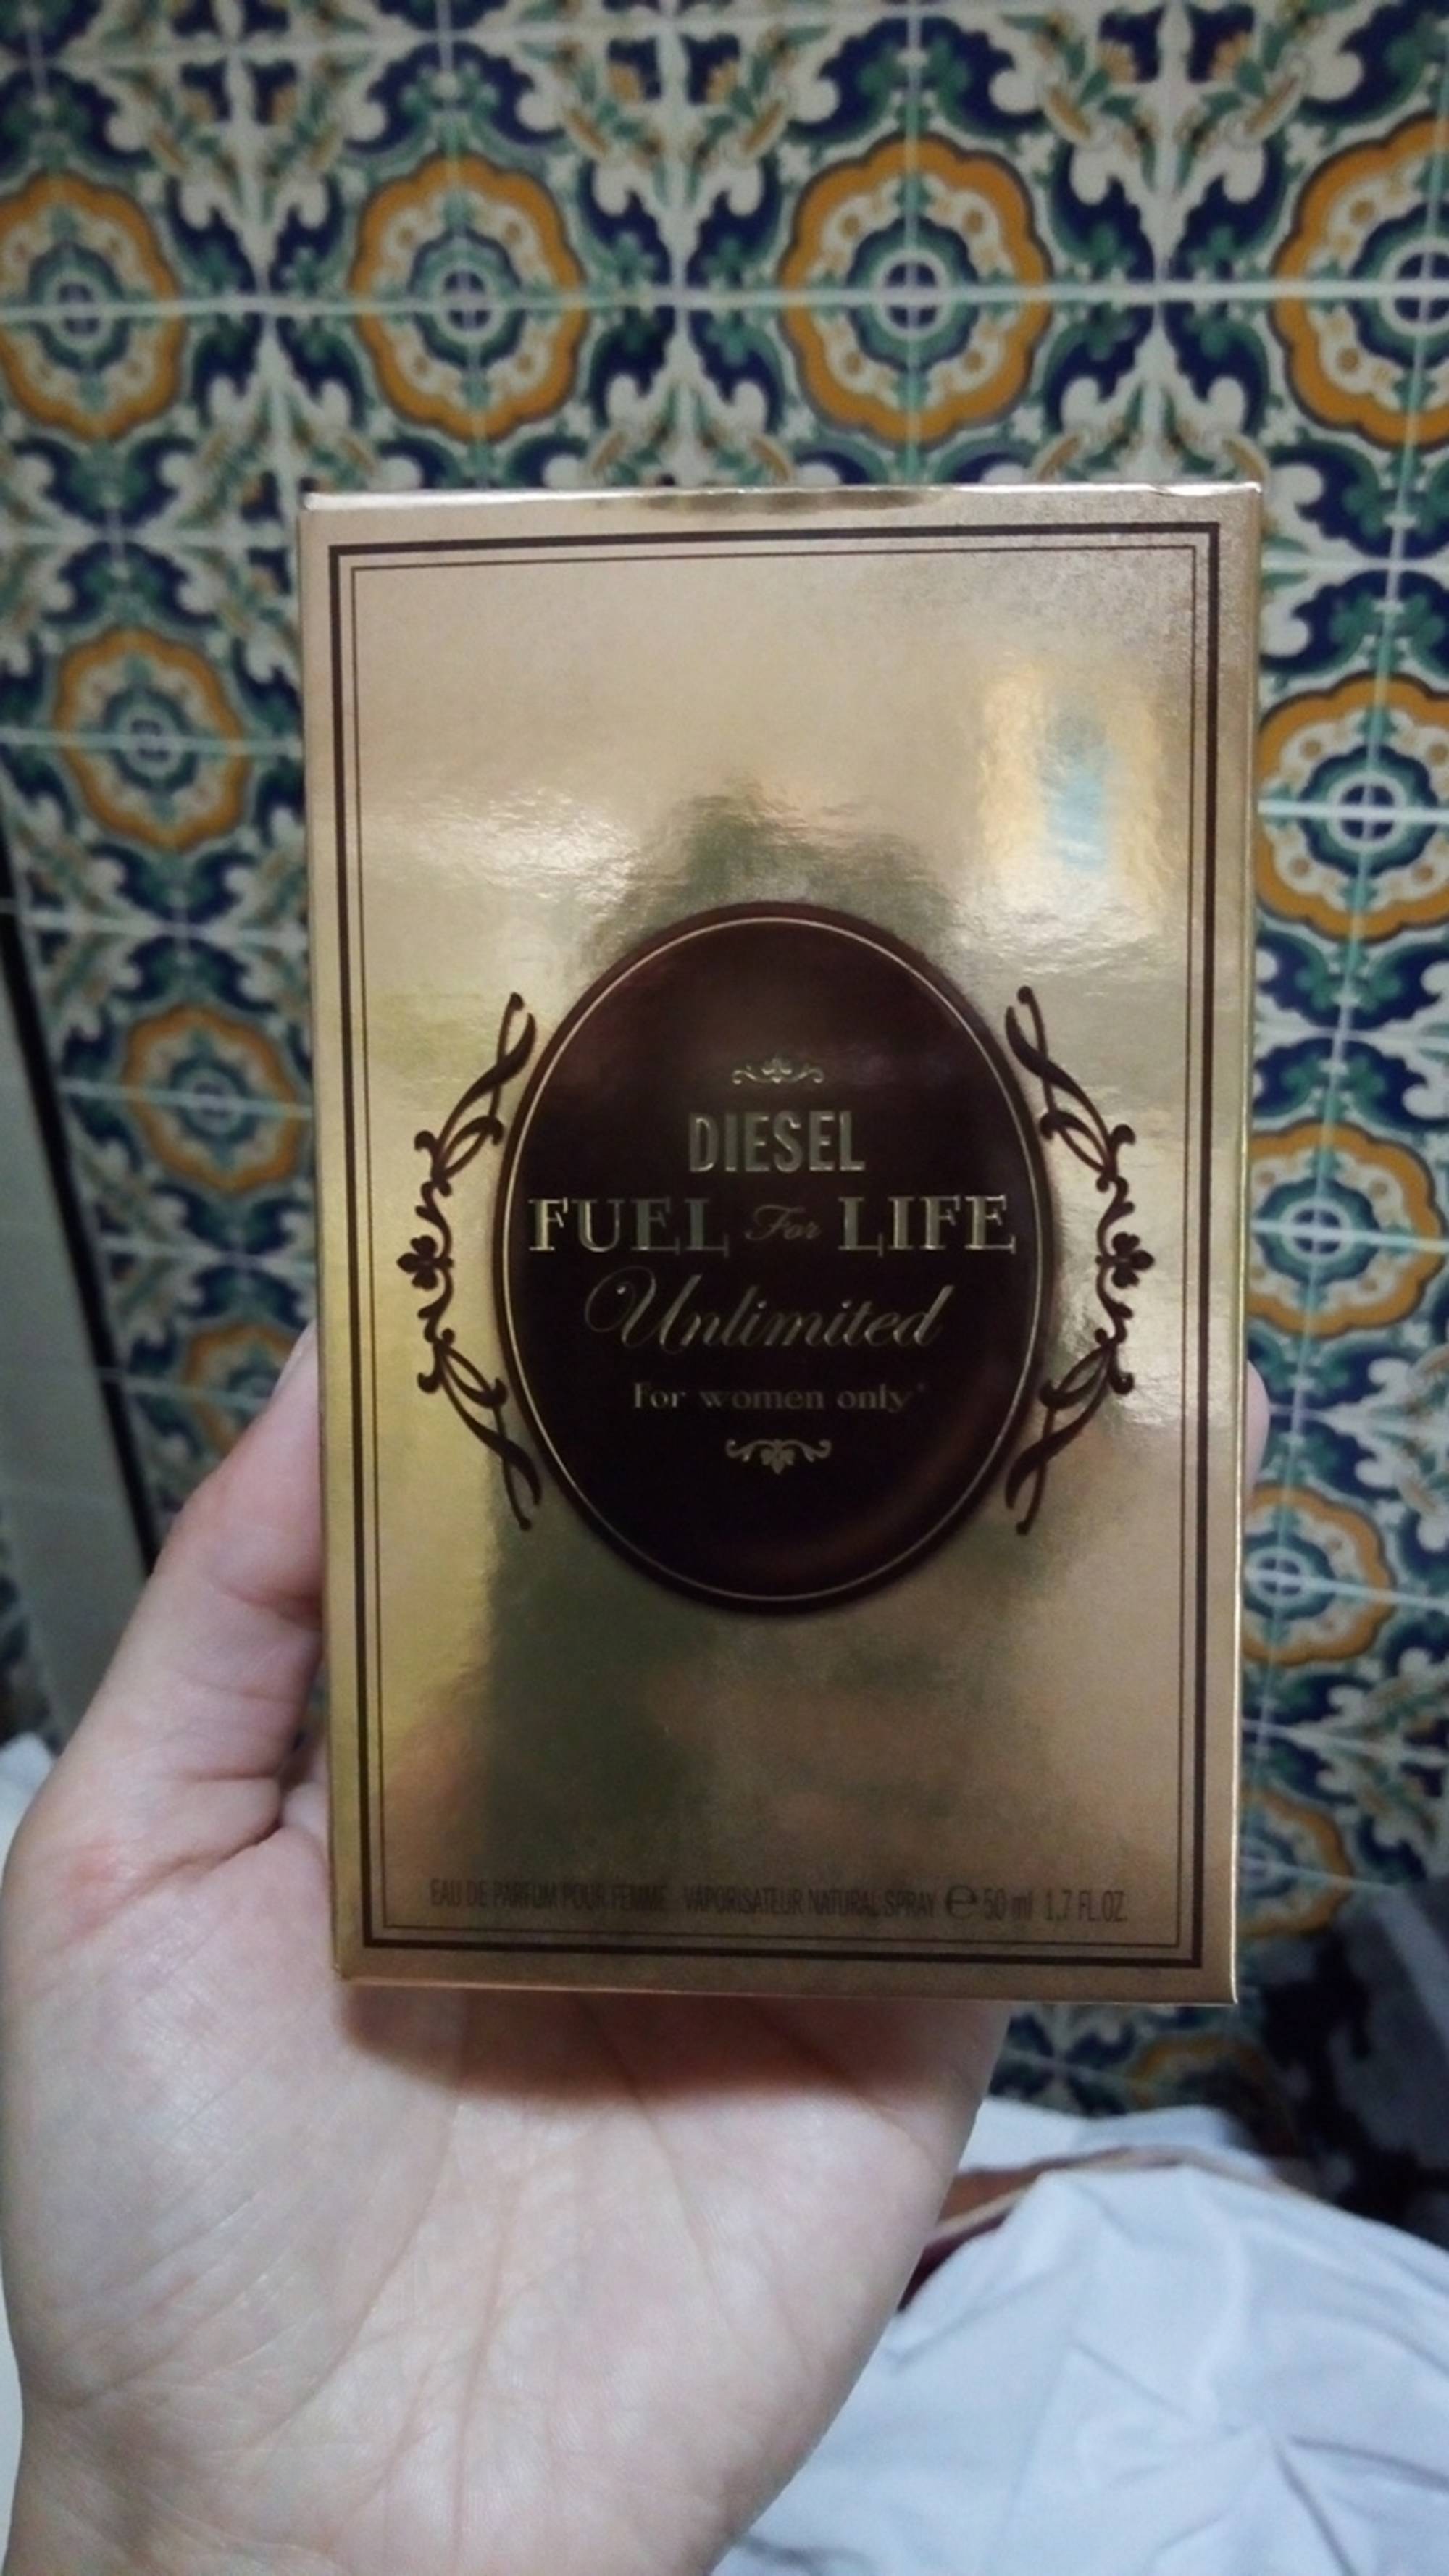 DIESEL - Fuel for life unlimited - Eau de parfum pour femme